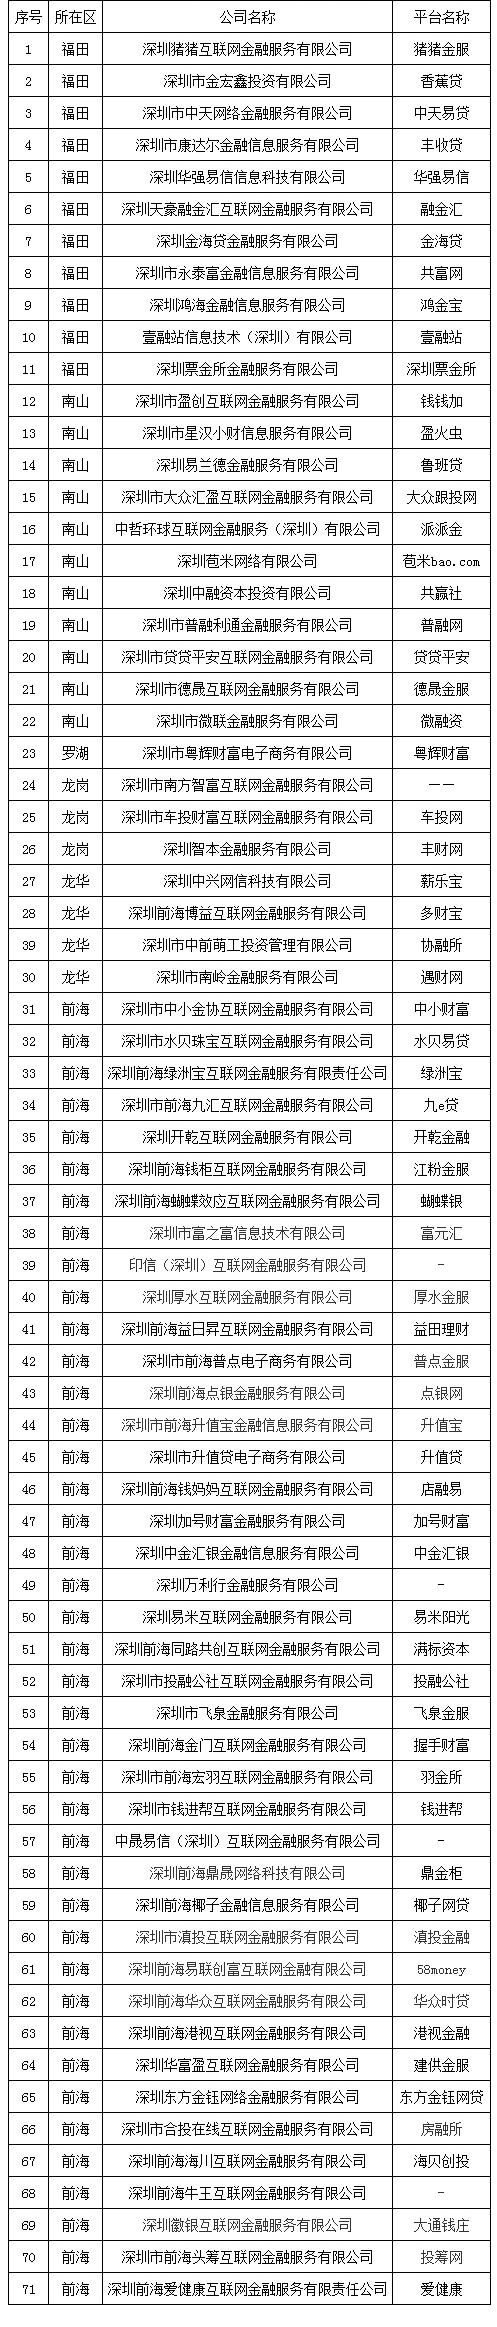 71家深圳网贷机构自愿退出 